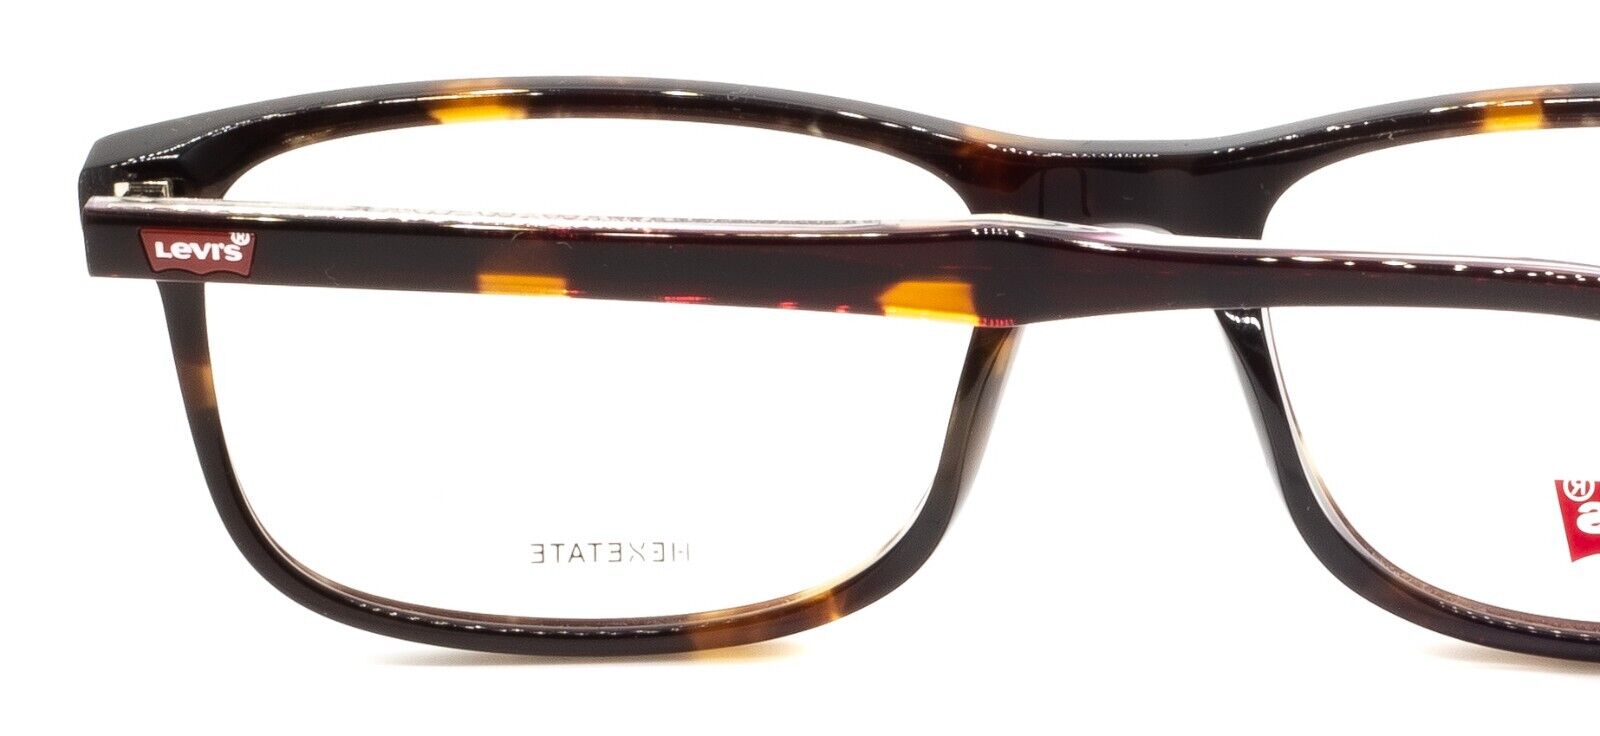 lv glasses frame